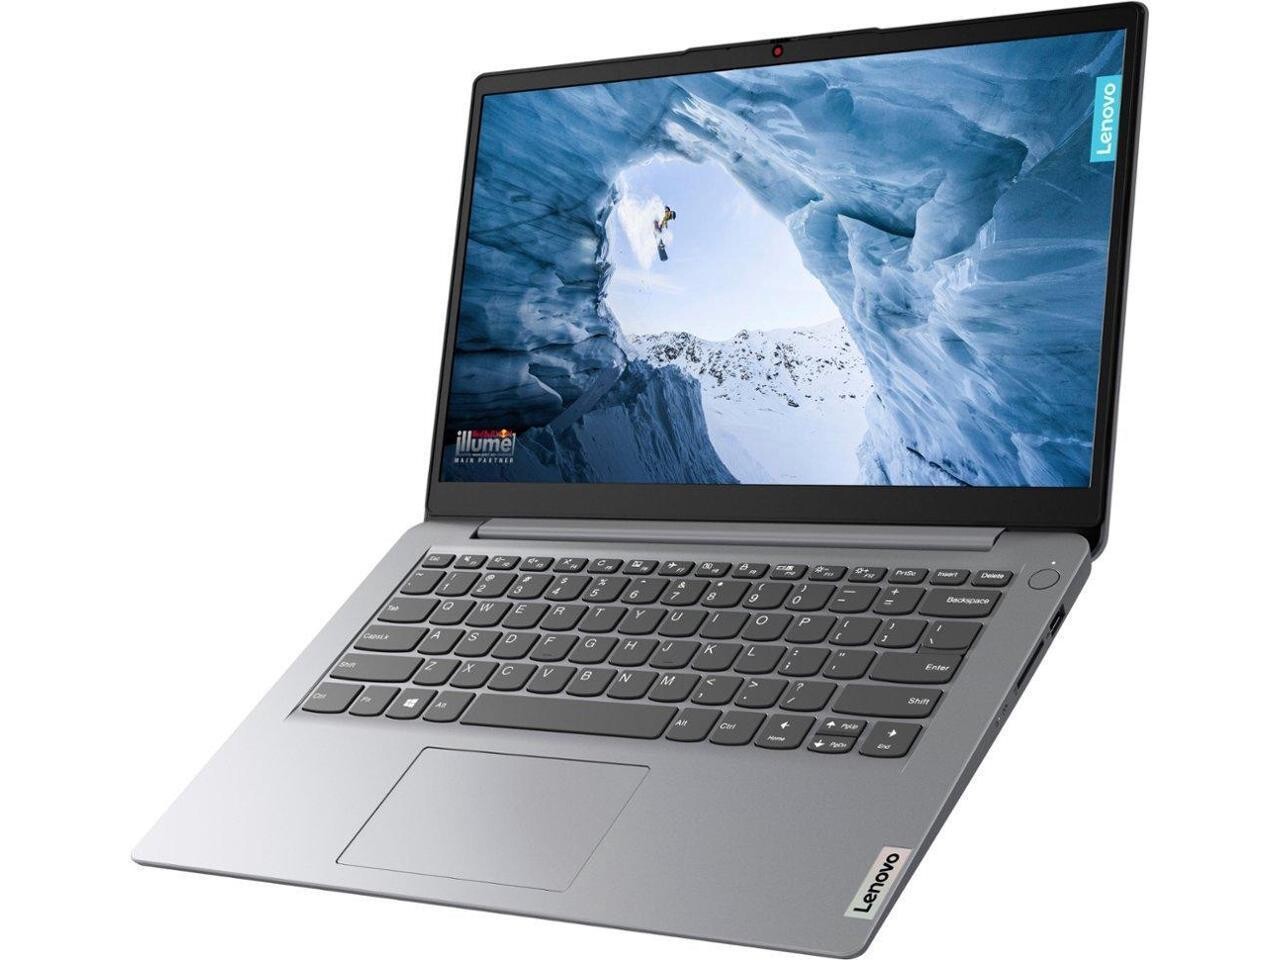 Lenovo - Laptop Ideapad 1 Pantalla 14.0" HD - Celeron N4020 con memoria de 4GB - eMMC de 128GB - Windows 11 Home Gris nube - y Office 365 - Garantia 12 Meses!